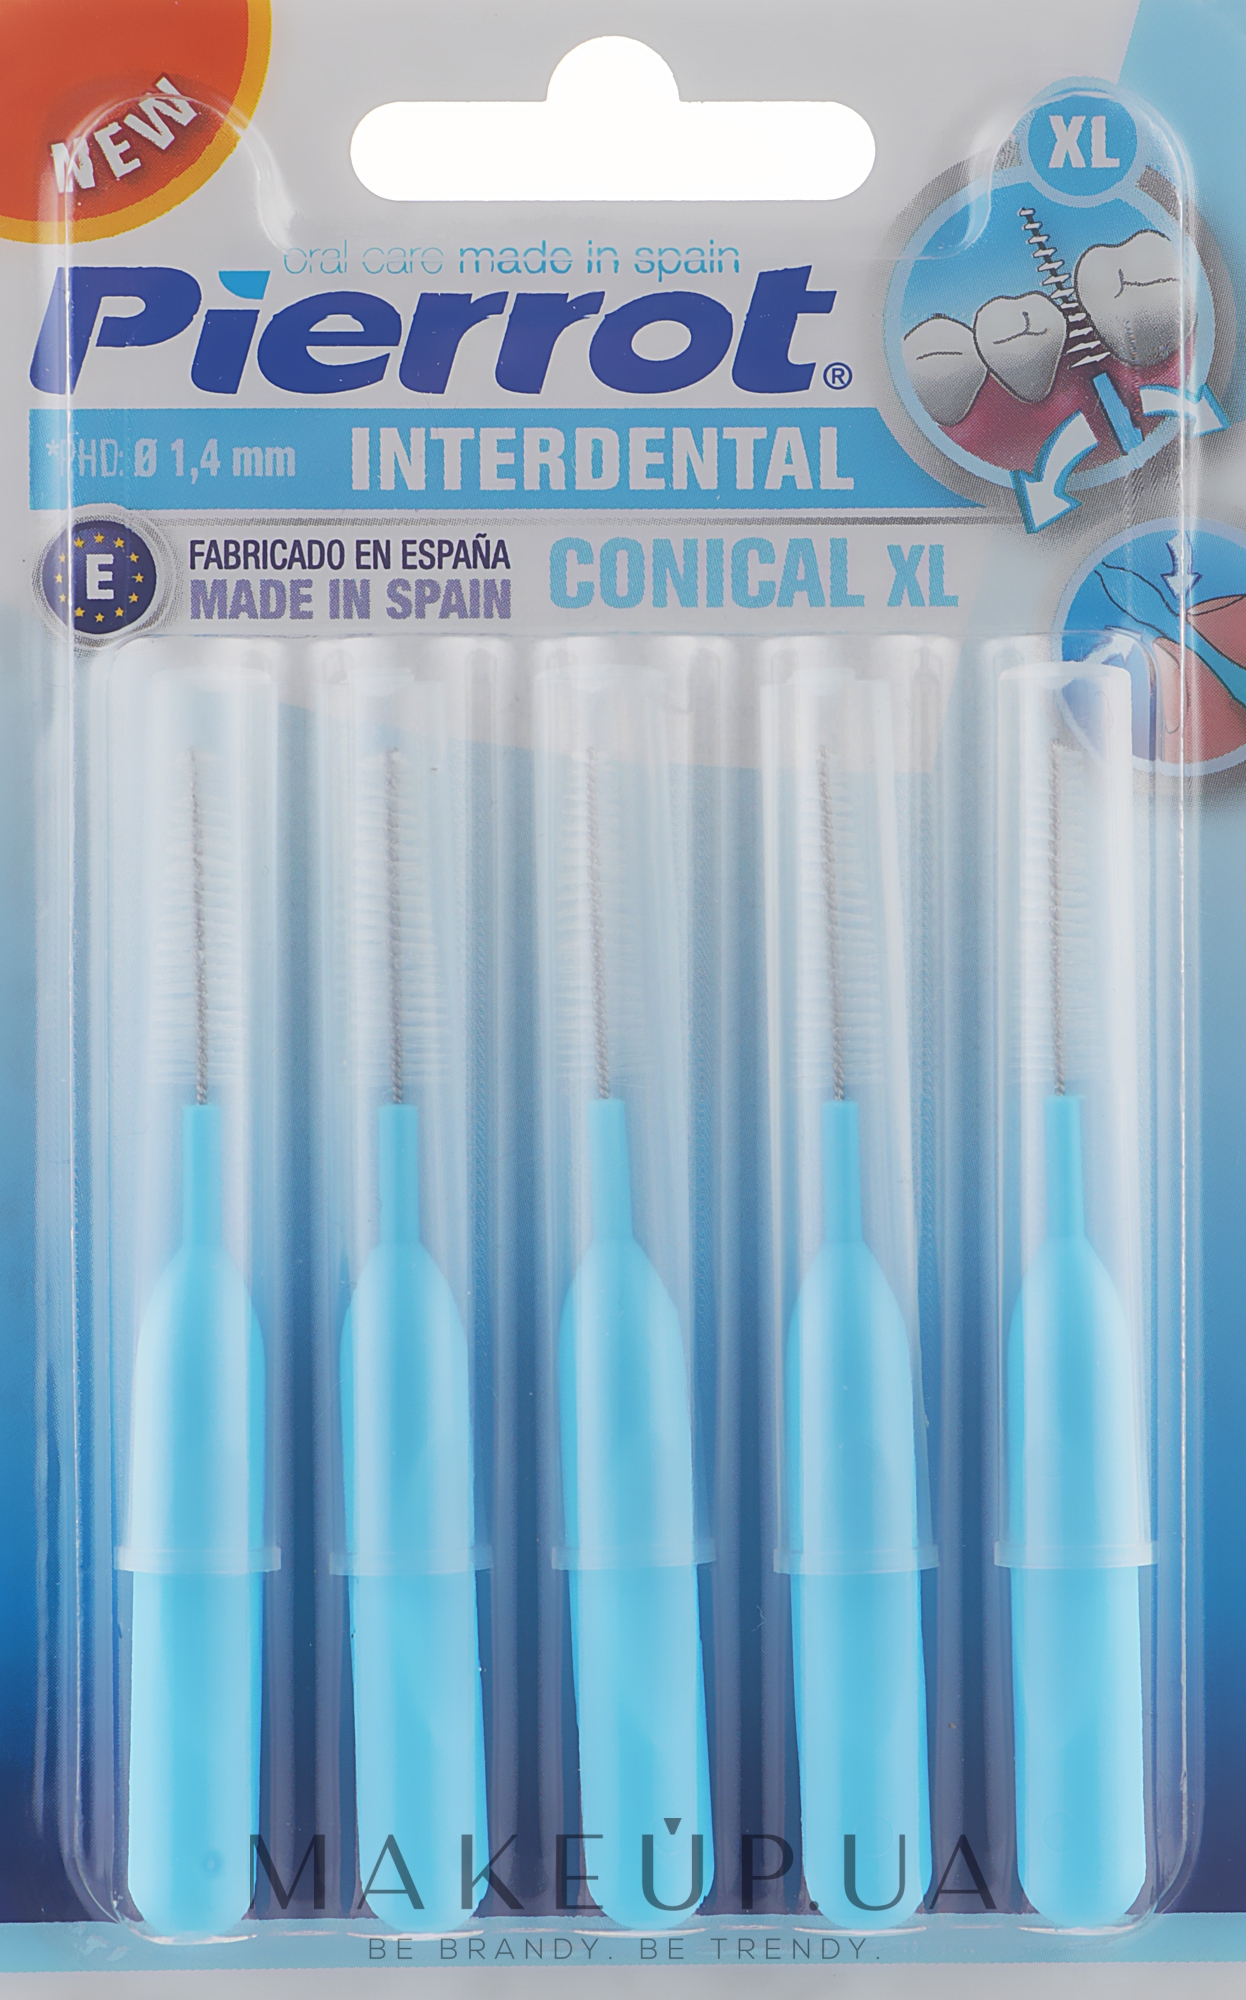 Міжзубні йоржики 1,4 мм, 5 шт. - Pierrot Interdental Conical XL Ref.46 — фото 5шт